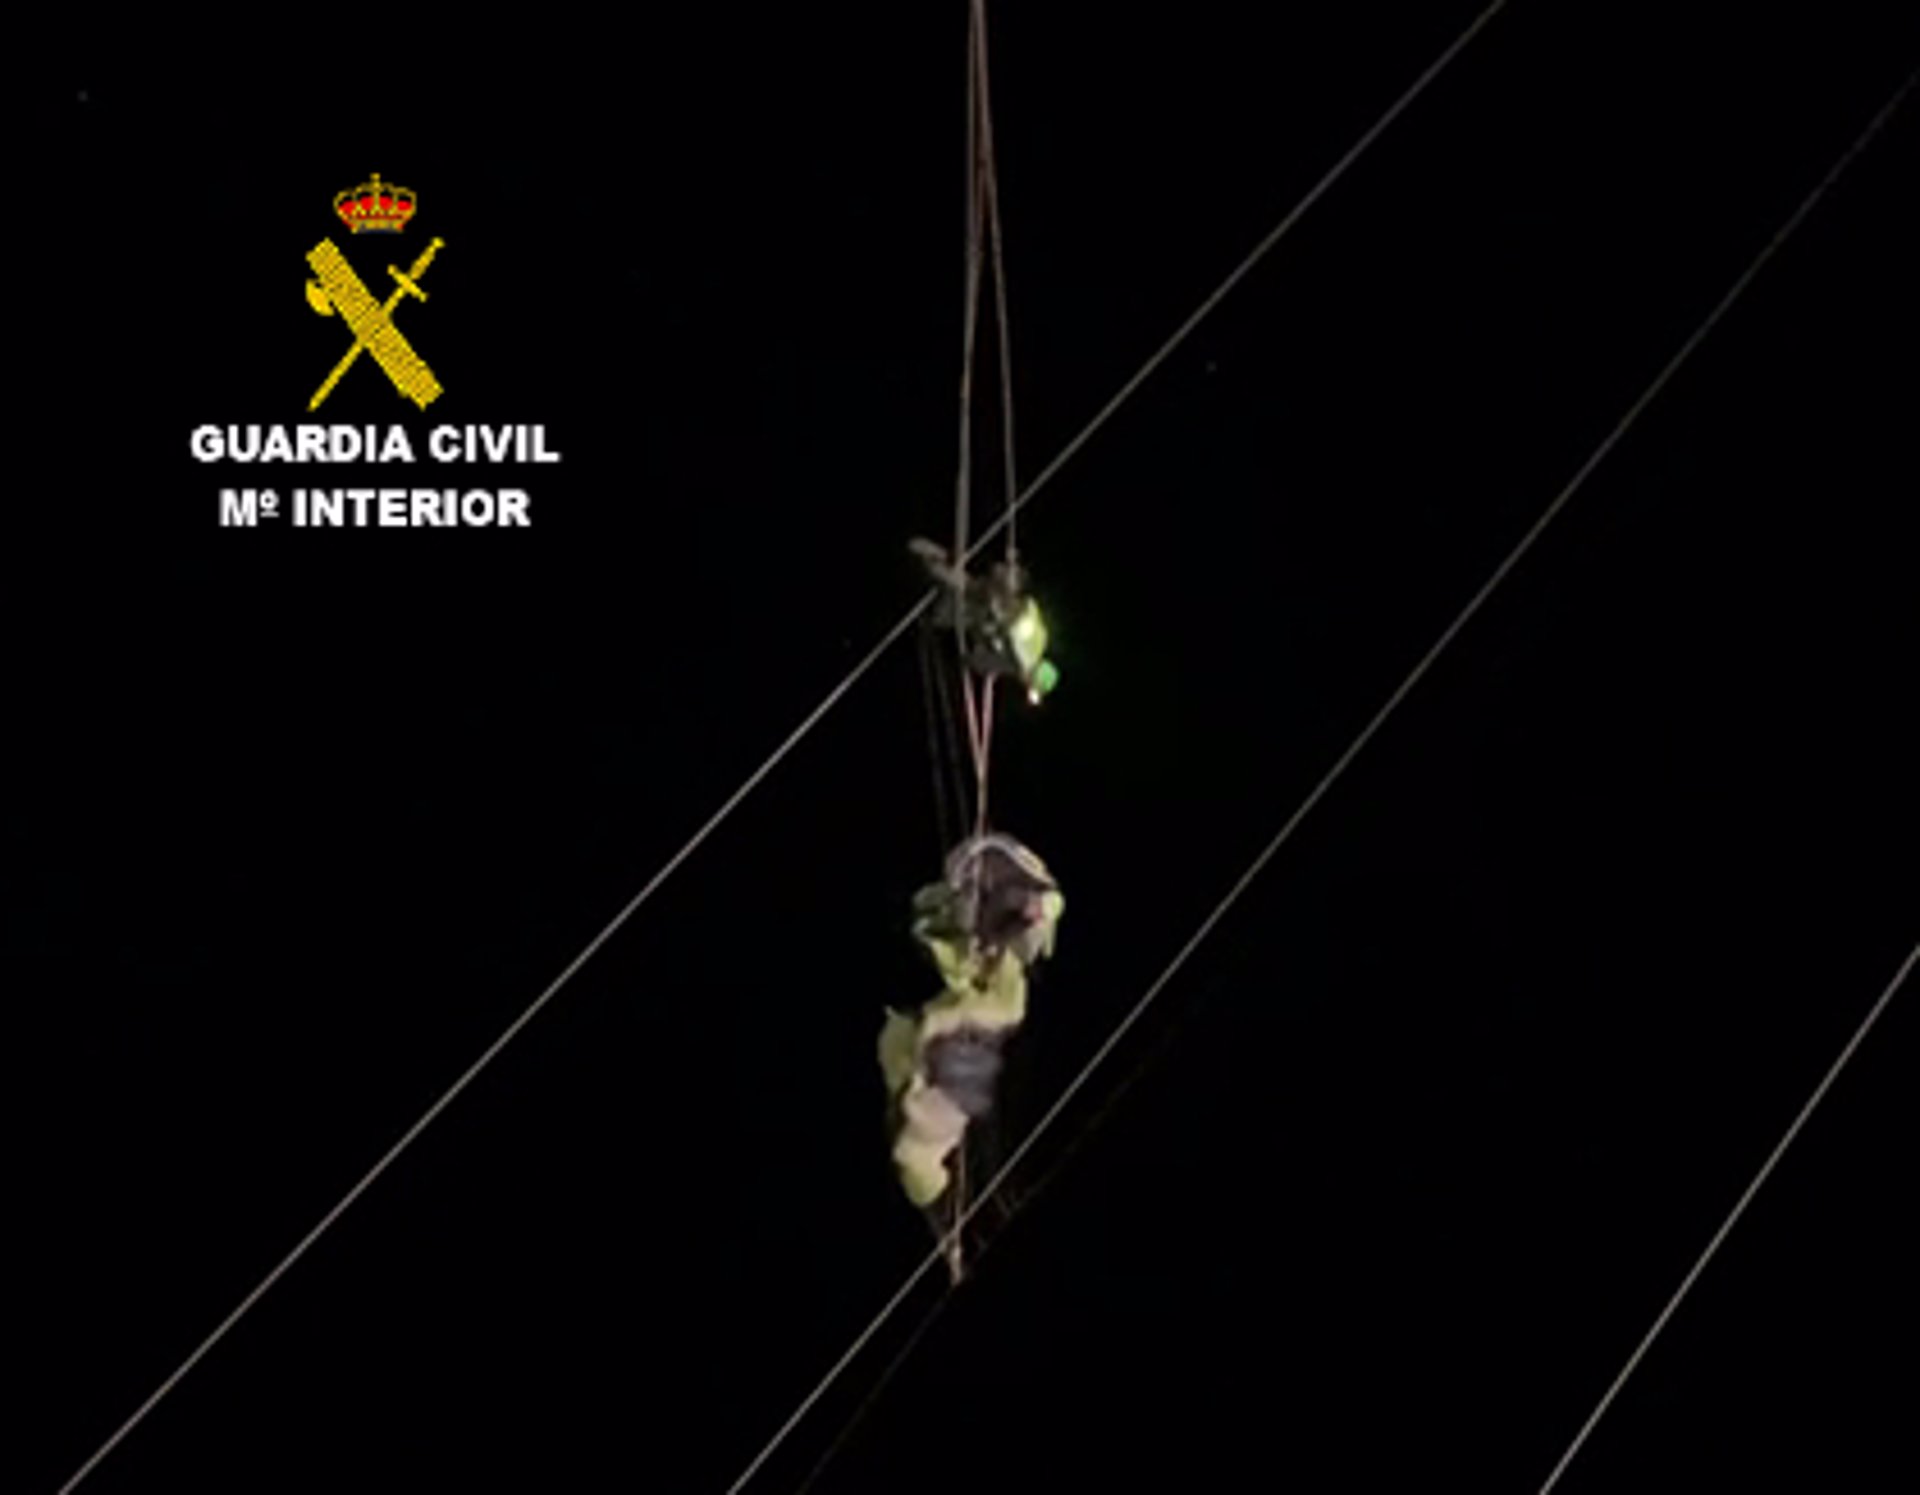 Rescatado un parapentista que se quedó atrapado en unos cables de alta tensión a 40 metros de altura